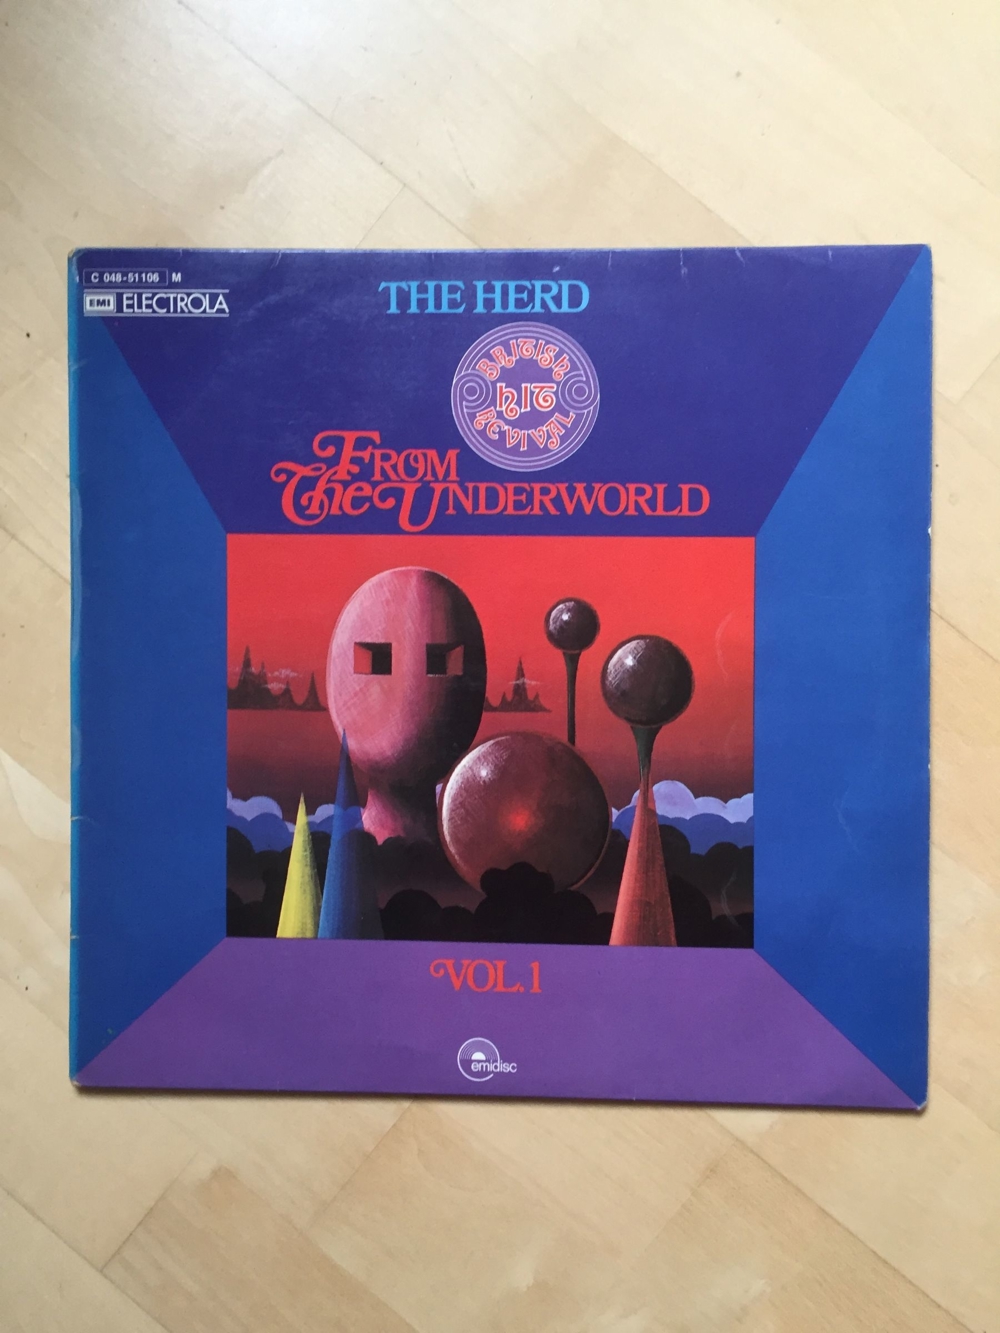 The Herd From the Underworld (Peter Frampton) - Schallplatte